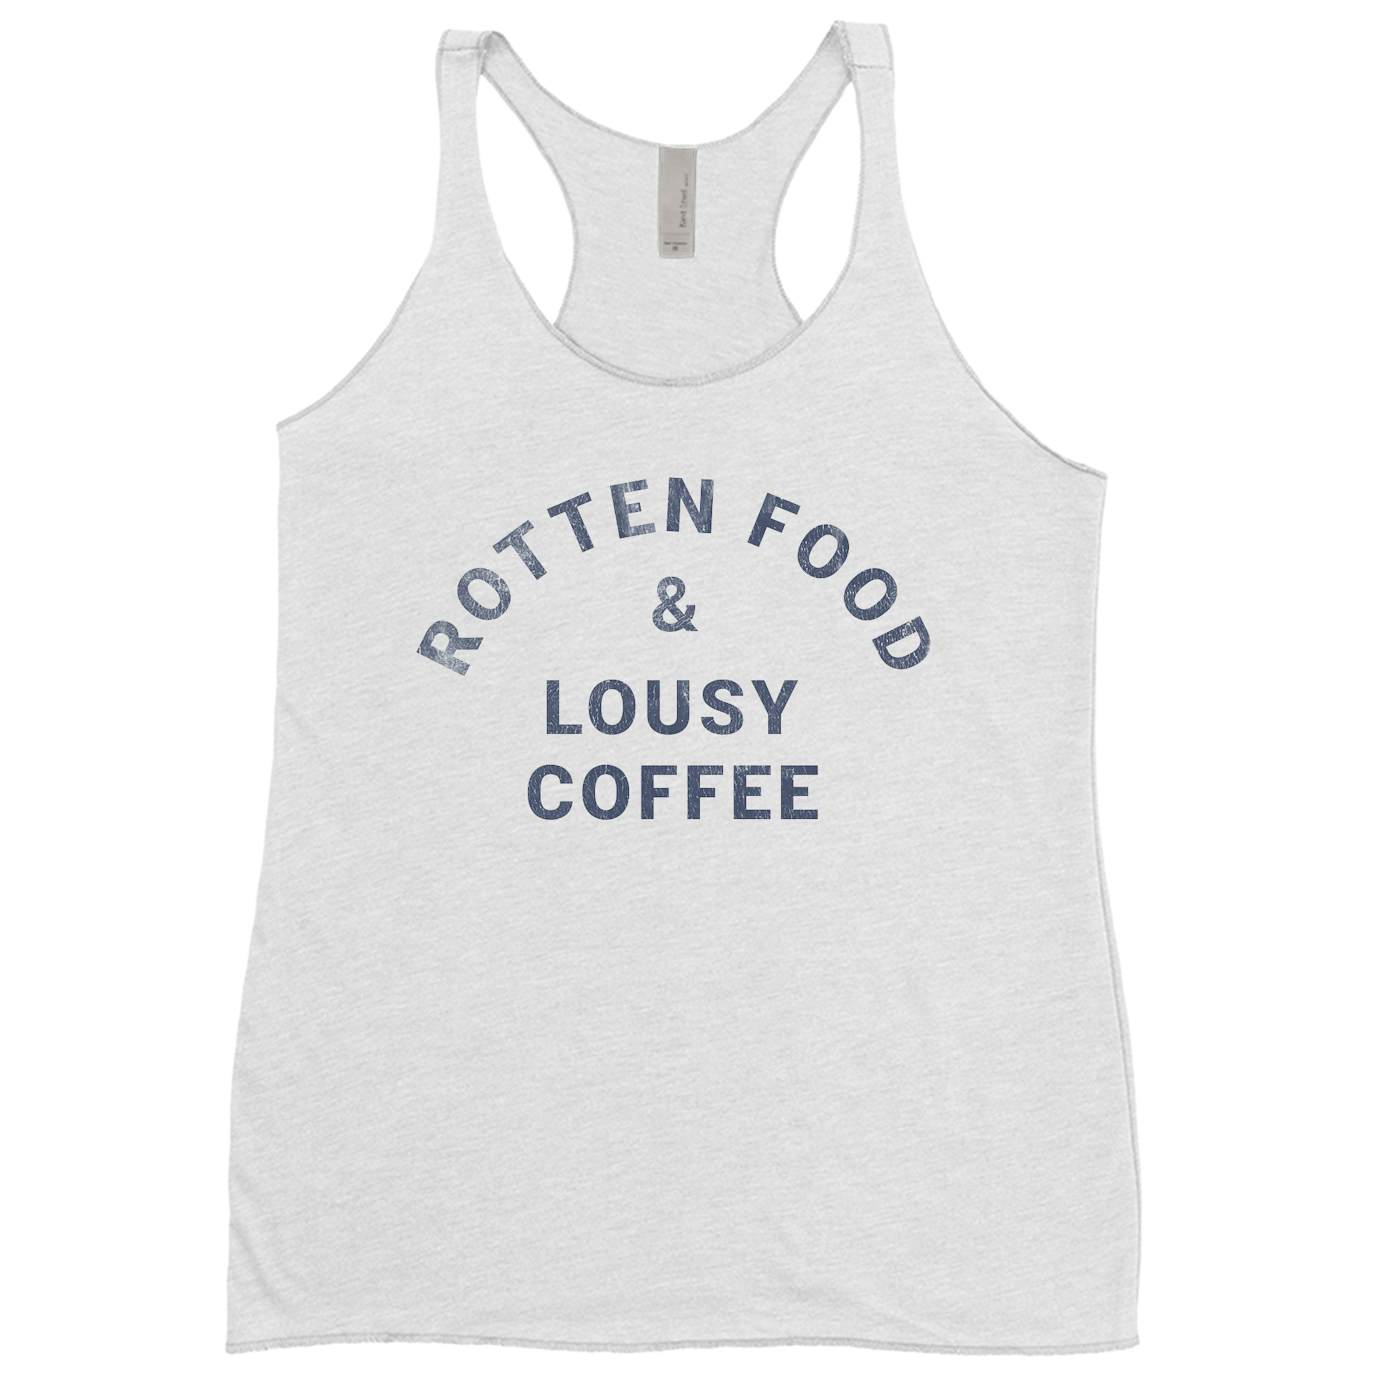 Joe Cocker Ladies' Tank Top | Rotten Food & Lousy Coffee Tee worn by Joe Cocker Shirt